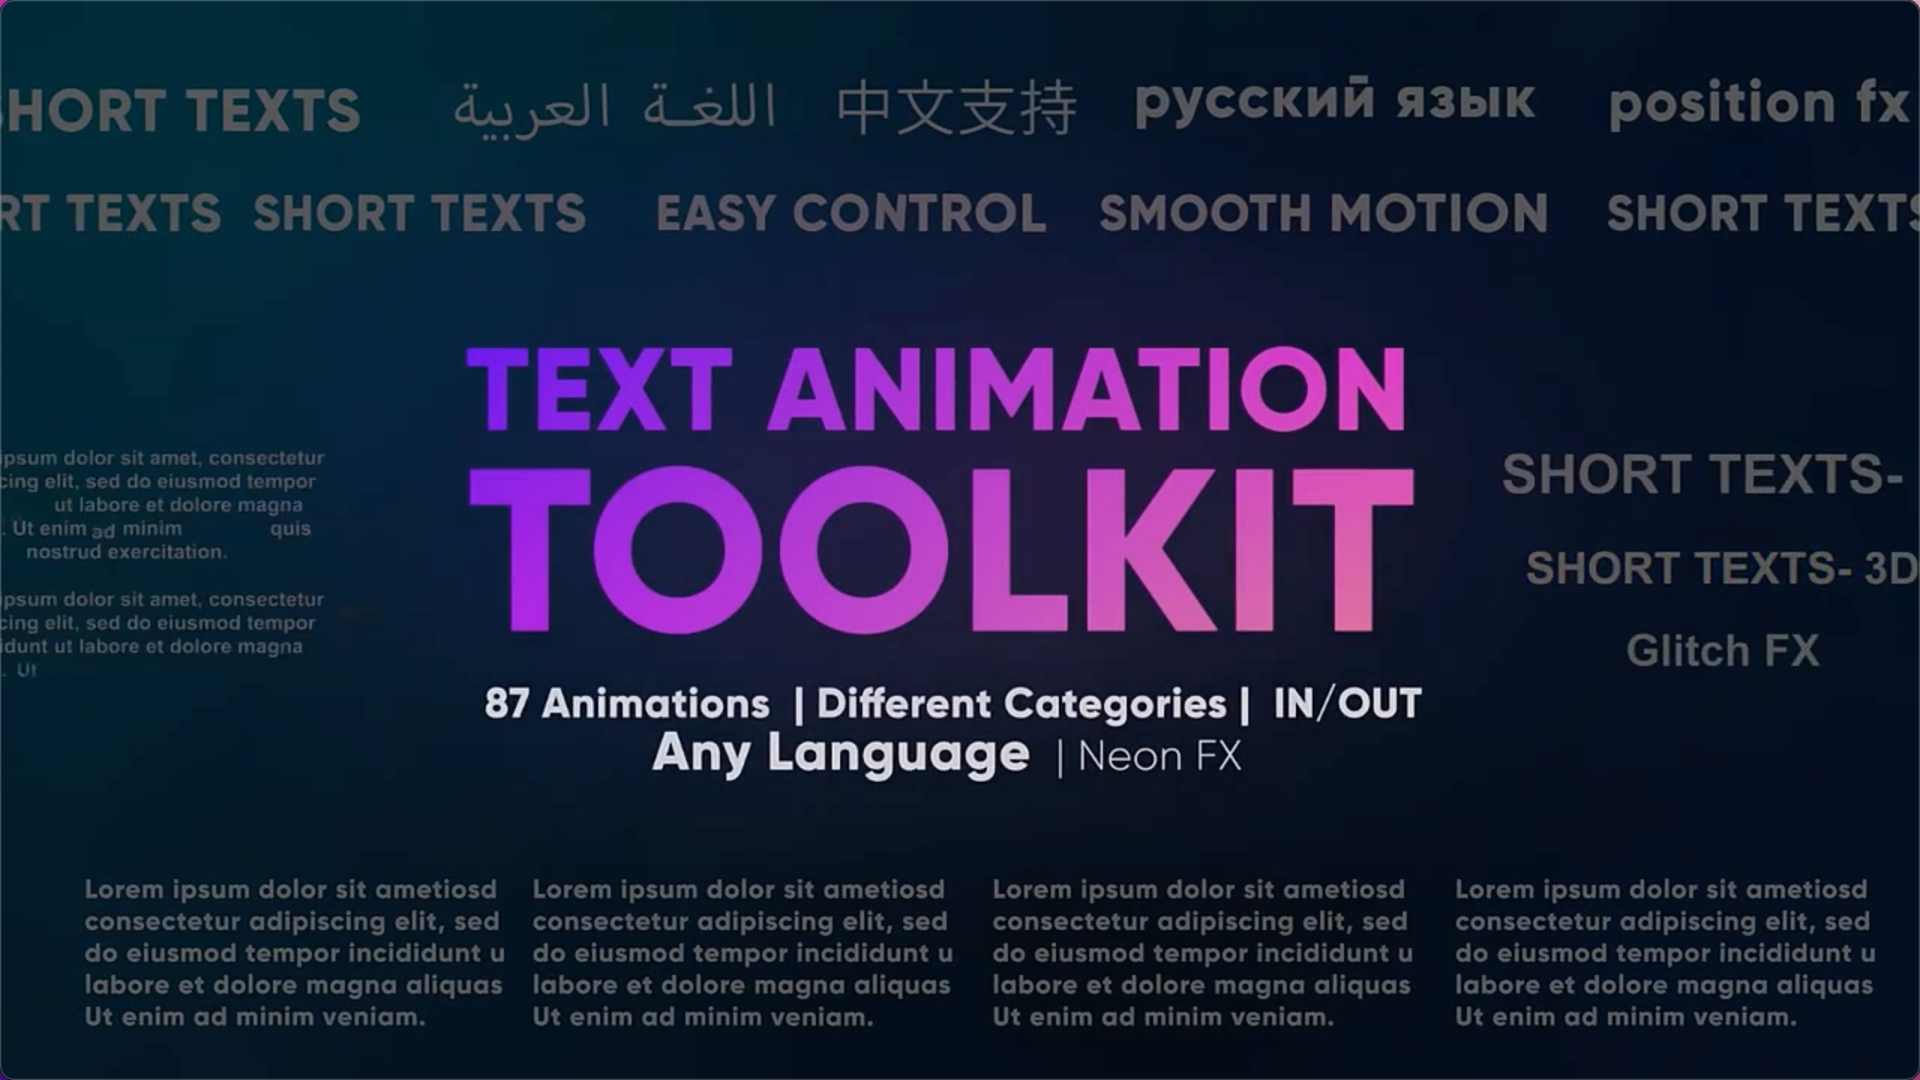 FCPX插件：87个文字标题动画预设Text Animation Toolkit